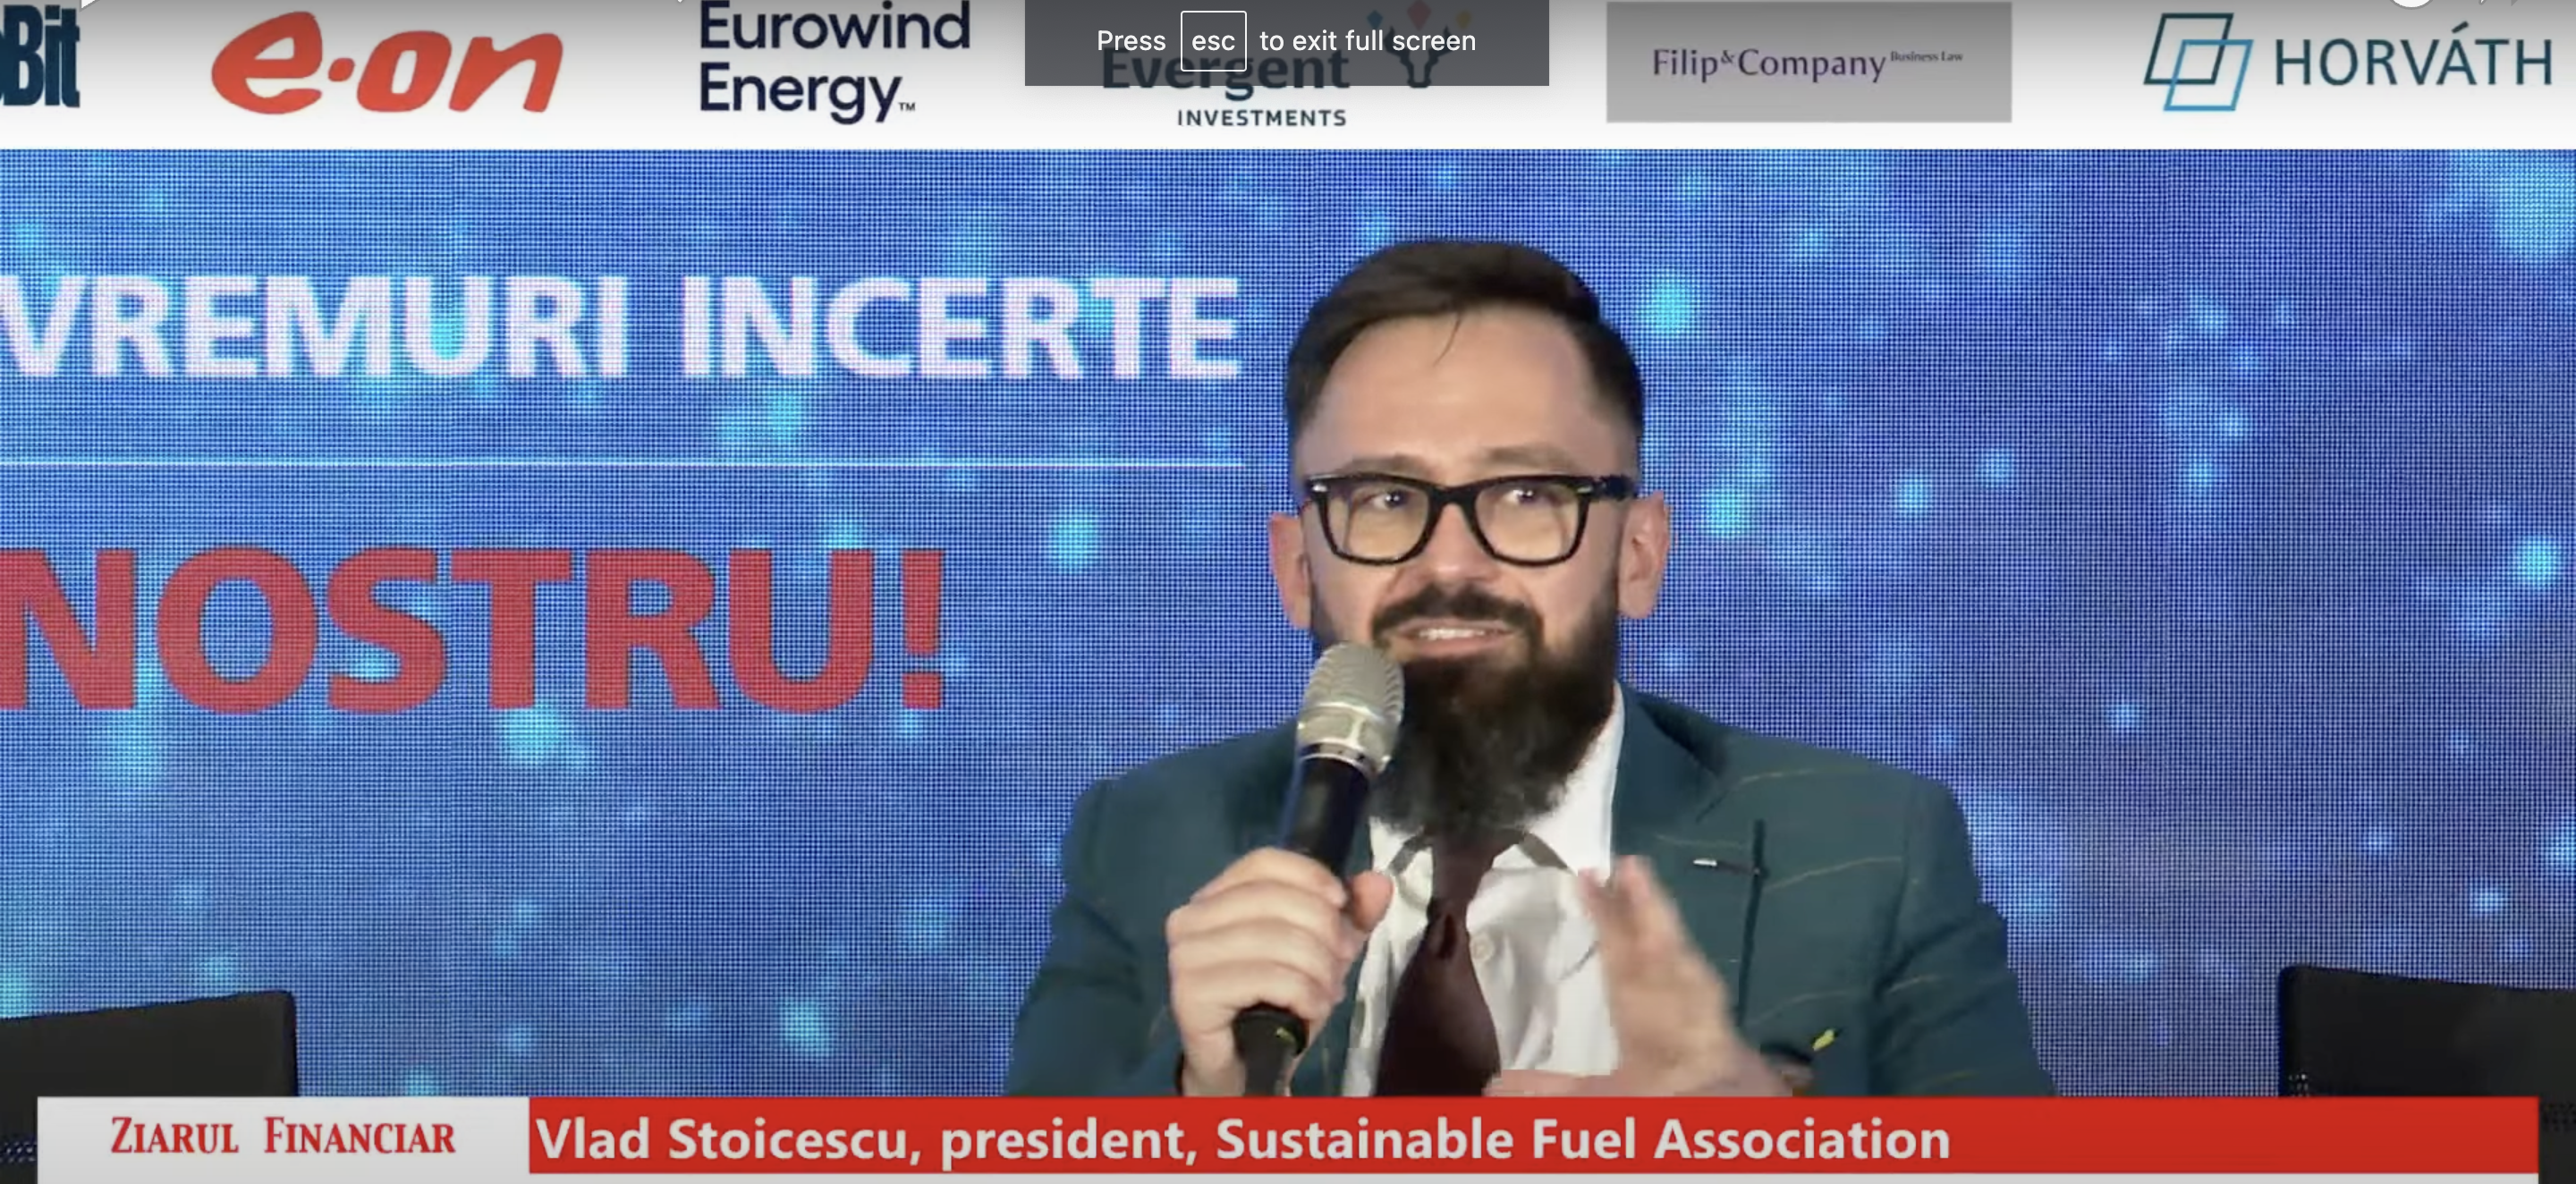 Vlad Stoicescu, preşedinte, Asociaţia pentru Combustibili Sustenabili: Este important să anunţăm toţi jucătorii industriali că se cer schimbări în piaţă, se cer parametri de sustenabilitate în producţie. Este o revoluţie verde 